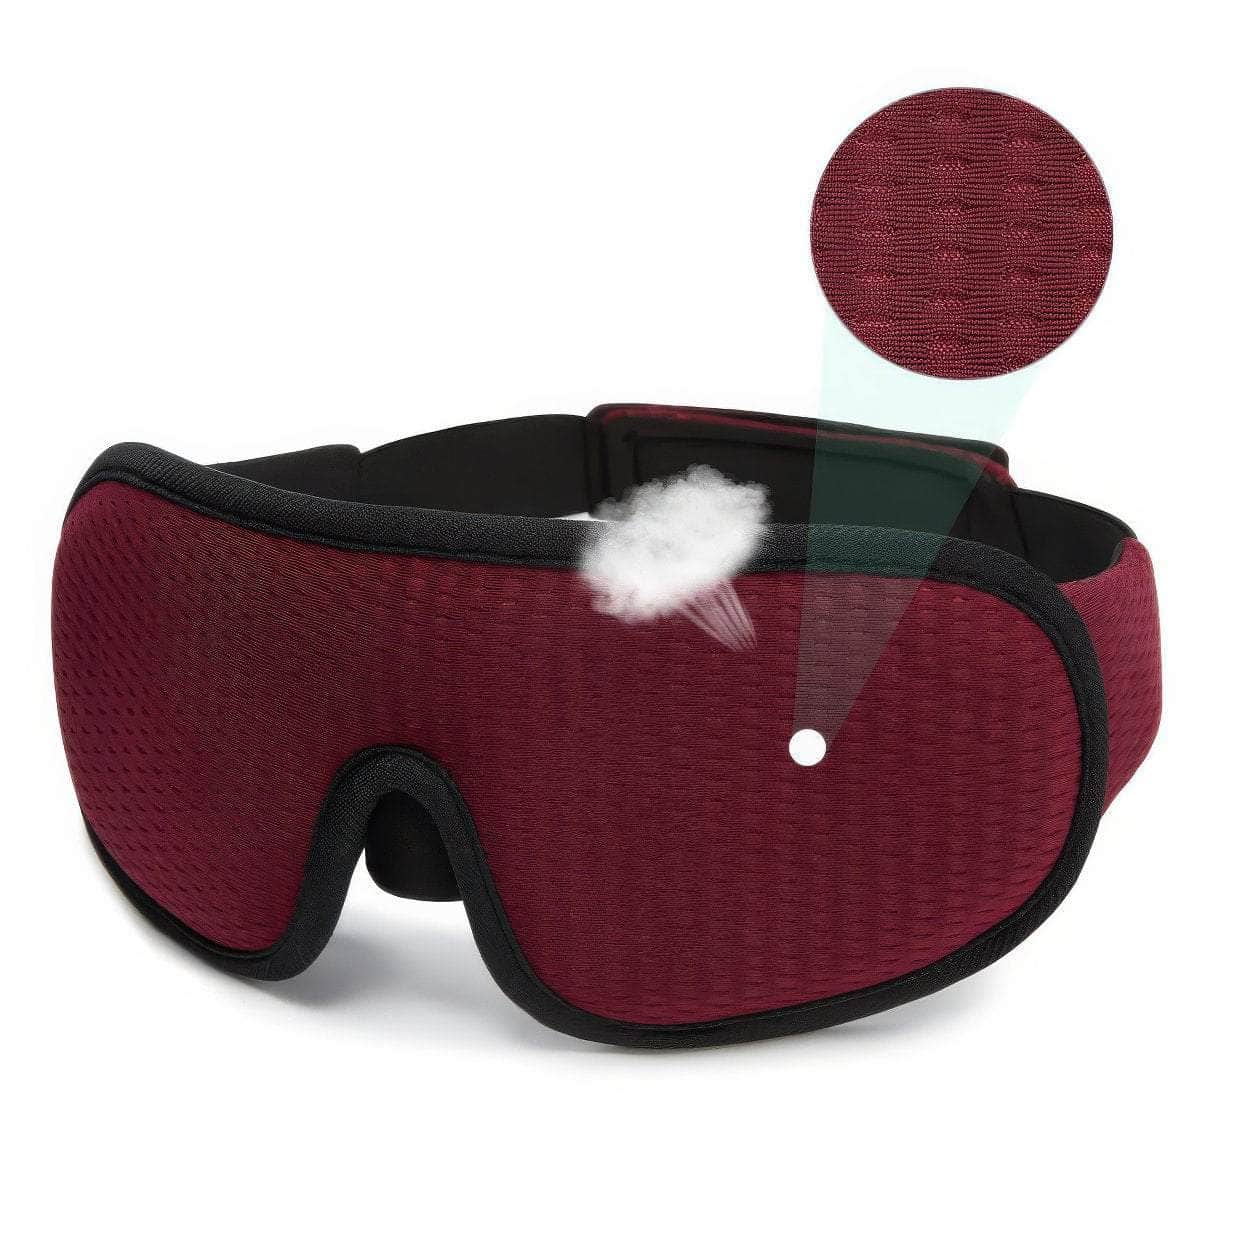 3D Sleeping Mask - Light Blocking Sleep Mask for Eyes, Soft, Breathable Eyeshade for Travel, Night Eye Mask for Sleeping Aid